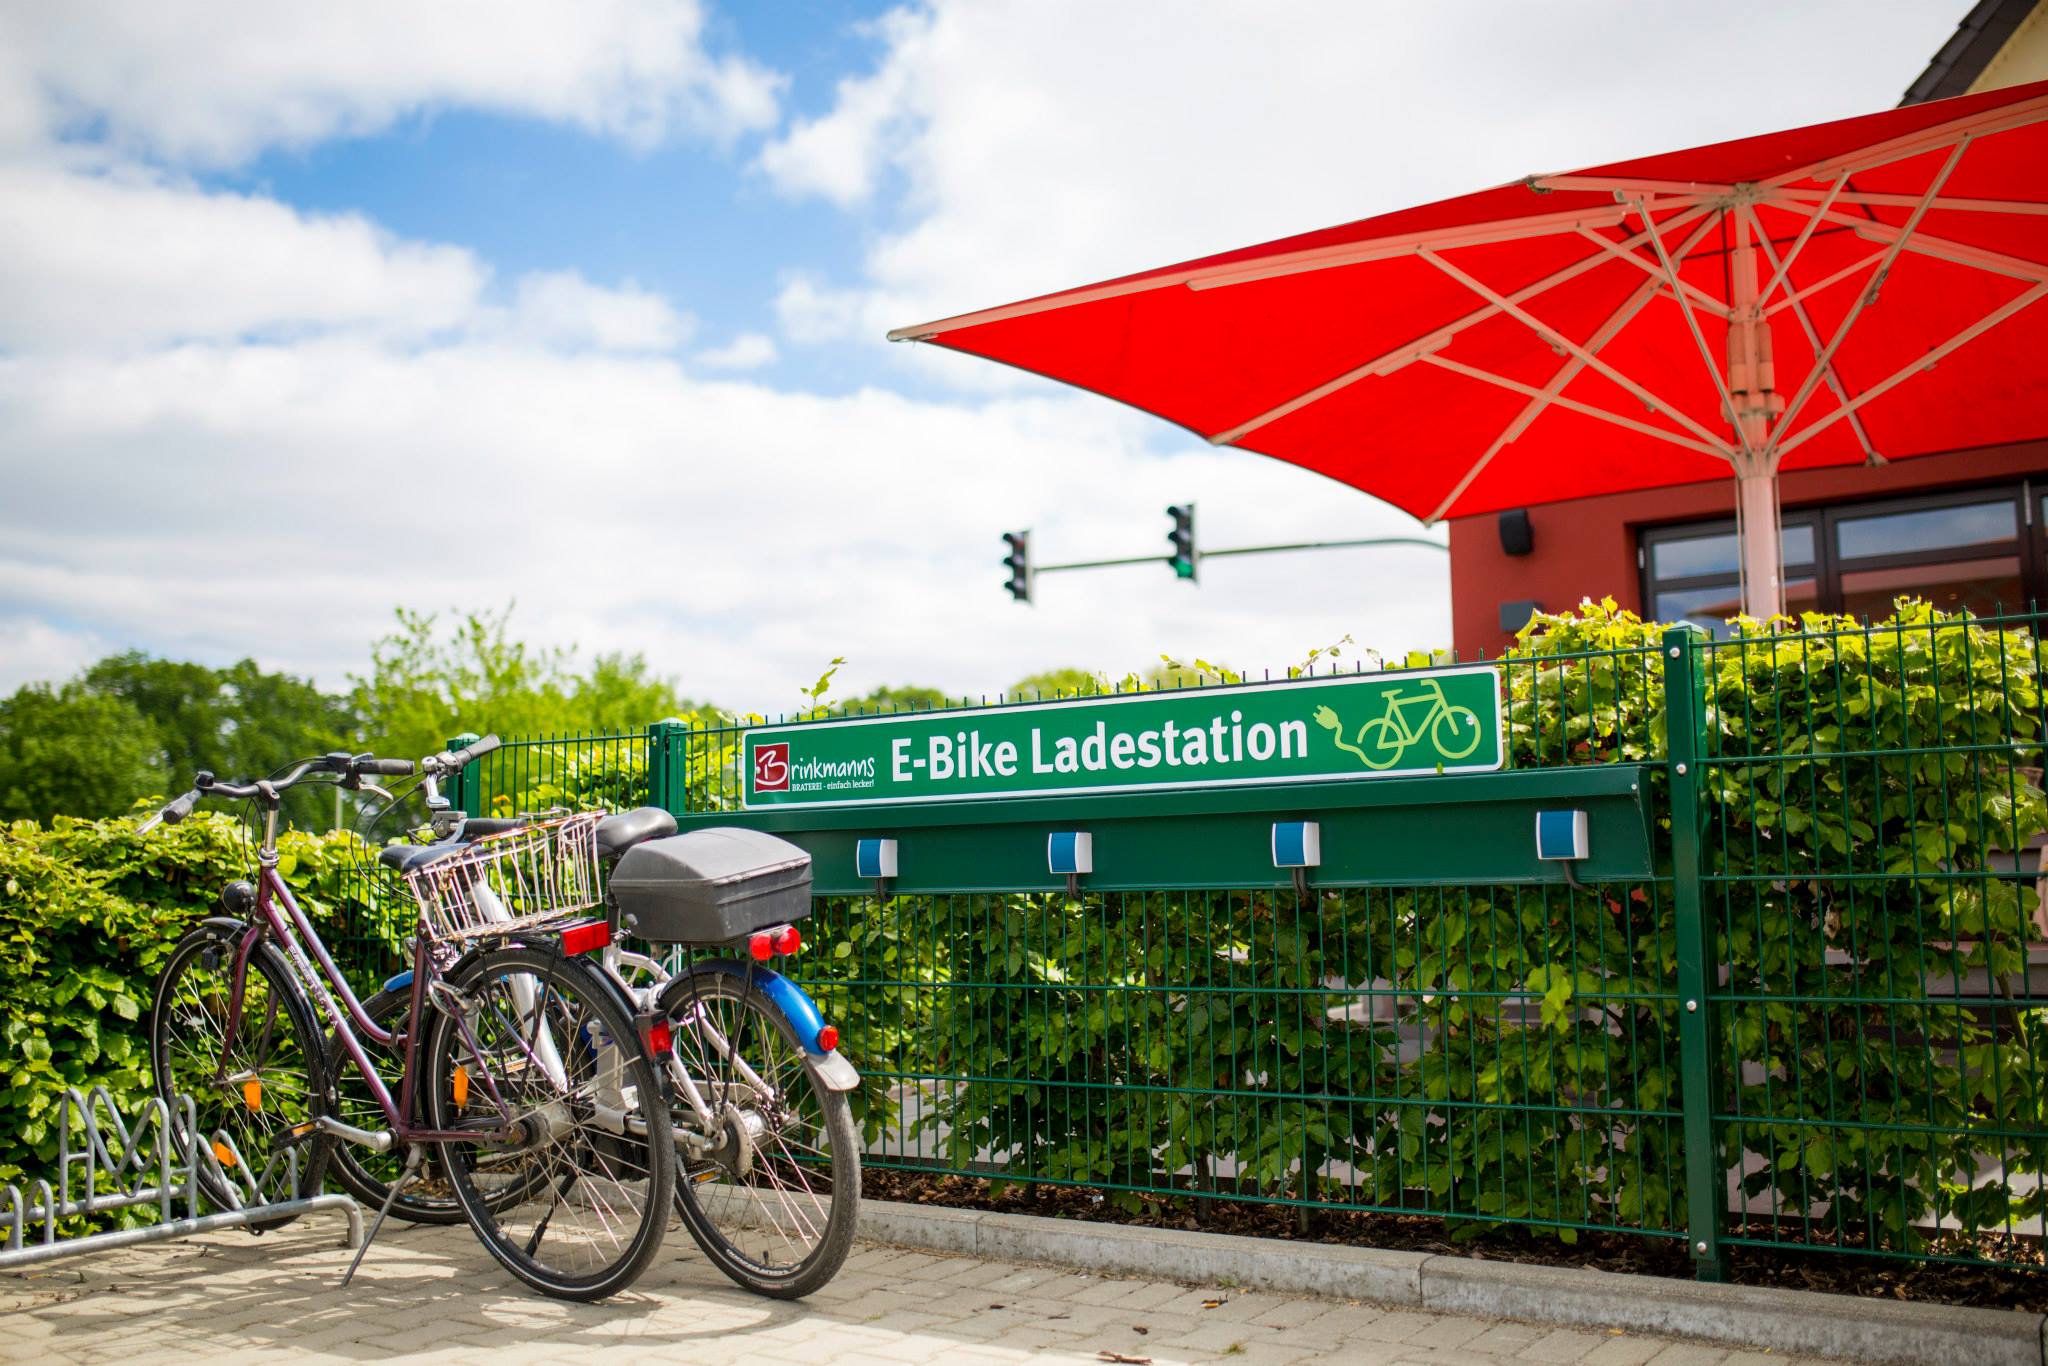 Sonnenbeschienene E-Bike-Ladestation von 'Brinkmanns Braterei' neben geparkten Fahrrädern, mit einem großen roten Sonnenschirm im Hintergrund, der über einer grünen Hecke schwebt.